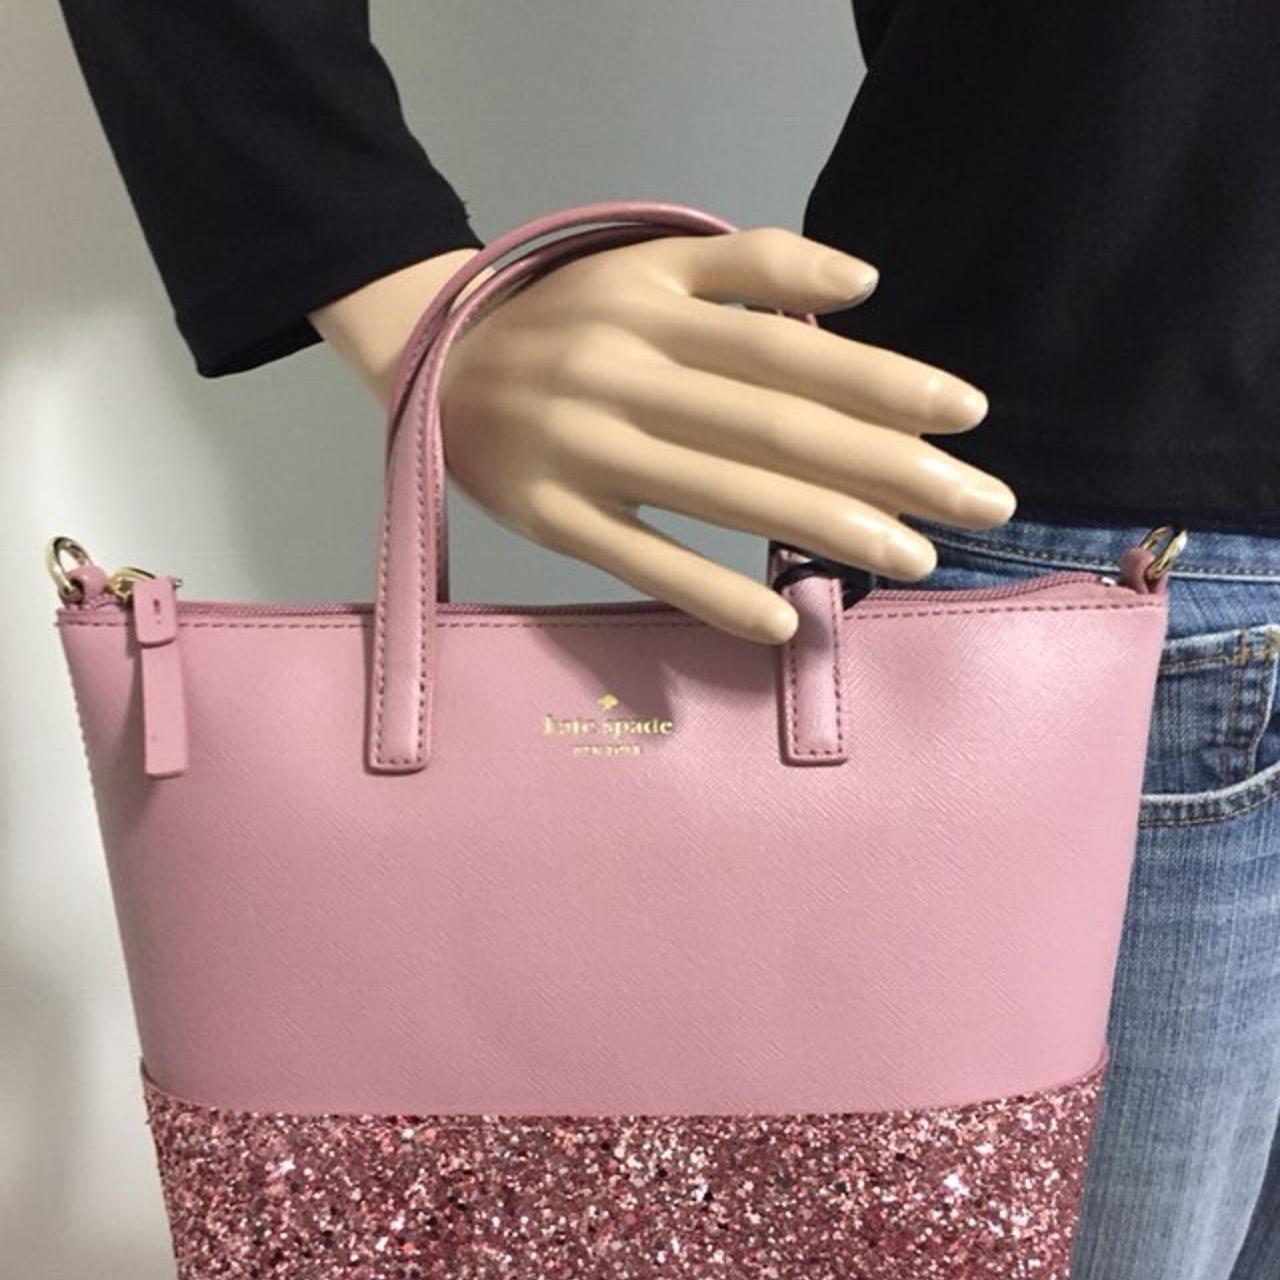 Kate Spade Violina Skyline Way Crossbody Glitter Blue Handbag |  Accessorising - Brand Name / Designer Handbags For Carry & Wear... Share If  You Care! | Kate spade handbags, Navy handbag, Pink handbags